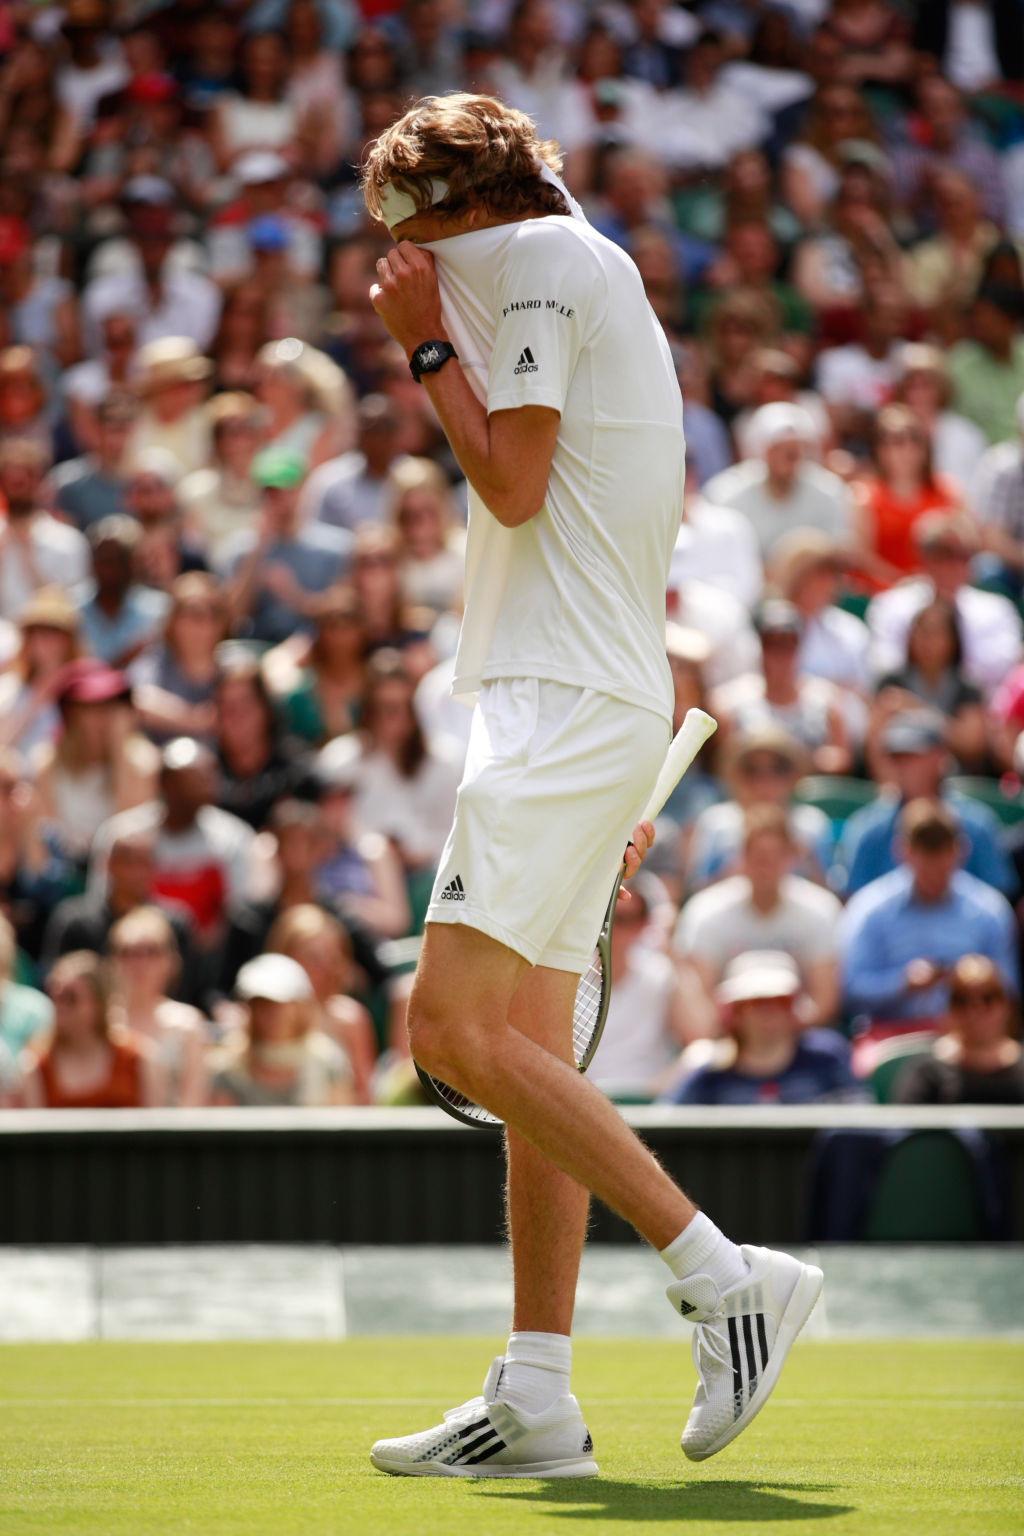 Alexander Zverev unterlag bei seinem ersten Spiel auf dem Centre Court von Wimbledon gegen Tomas Berdych.